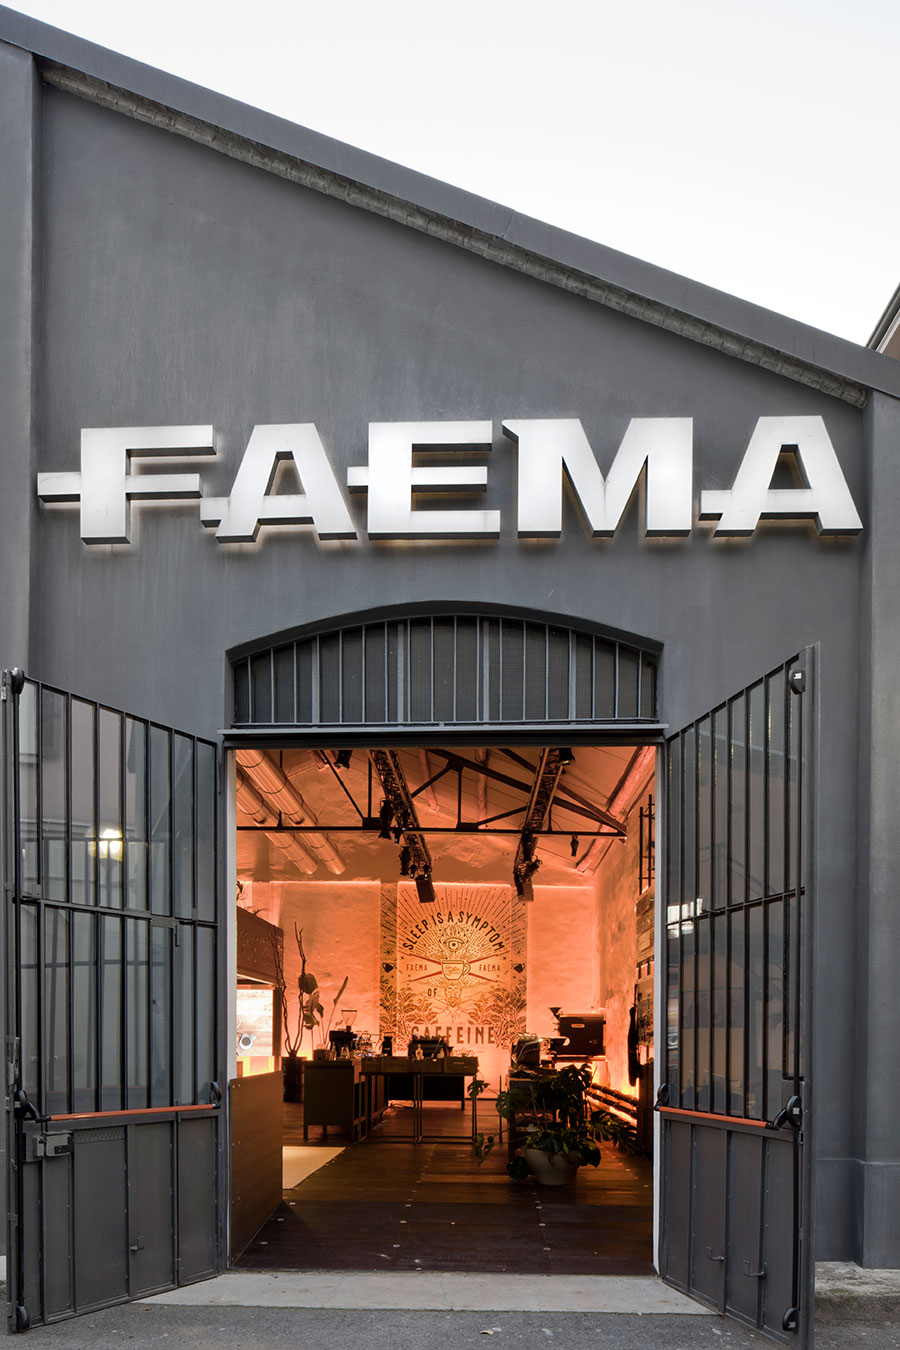 Iluminación Art & Caffeine, Faema Flagship Store